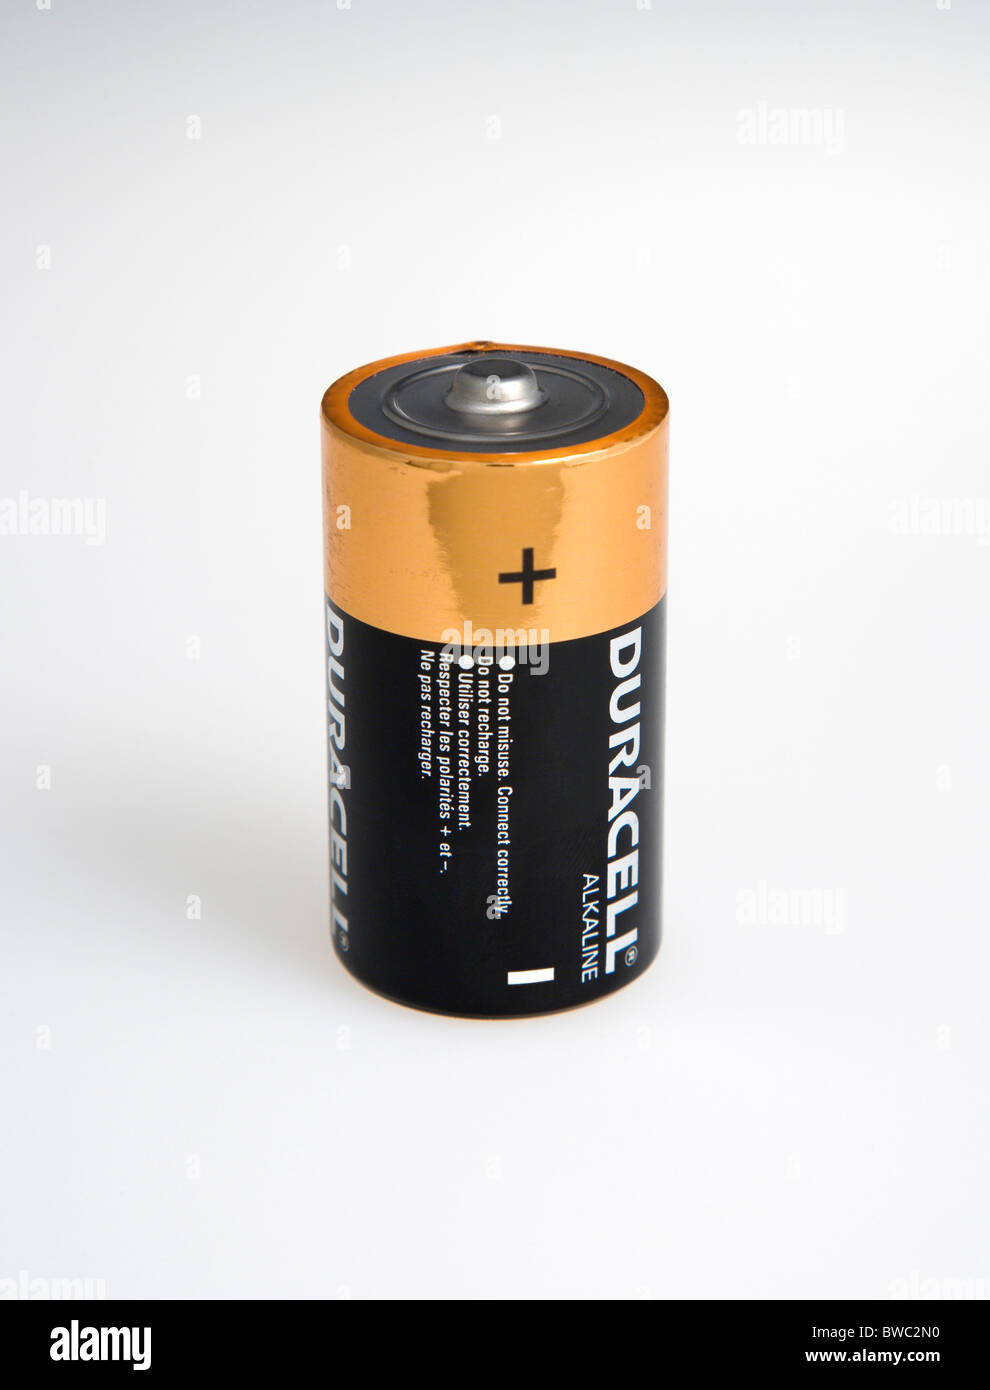 Potencia, pilas 1,5 voltios pilas alcalinas Duracell mostrando los terminales positivo y negativo sobre un fondo blanco Fotografía de stock - Alamy